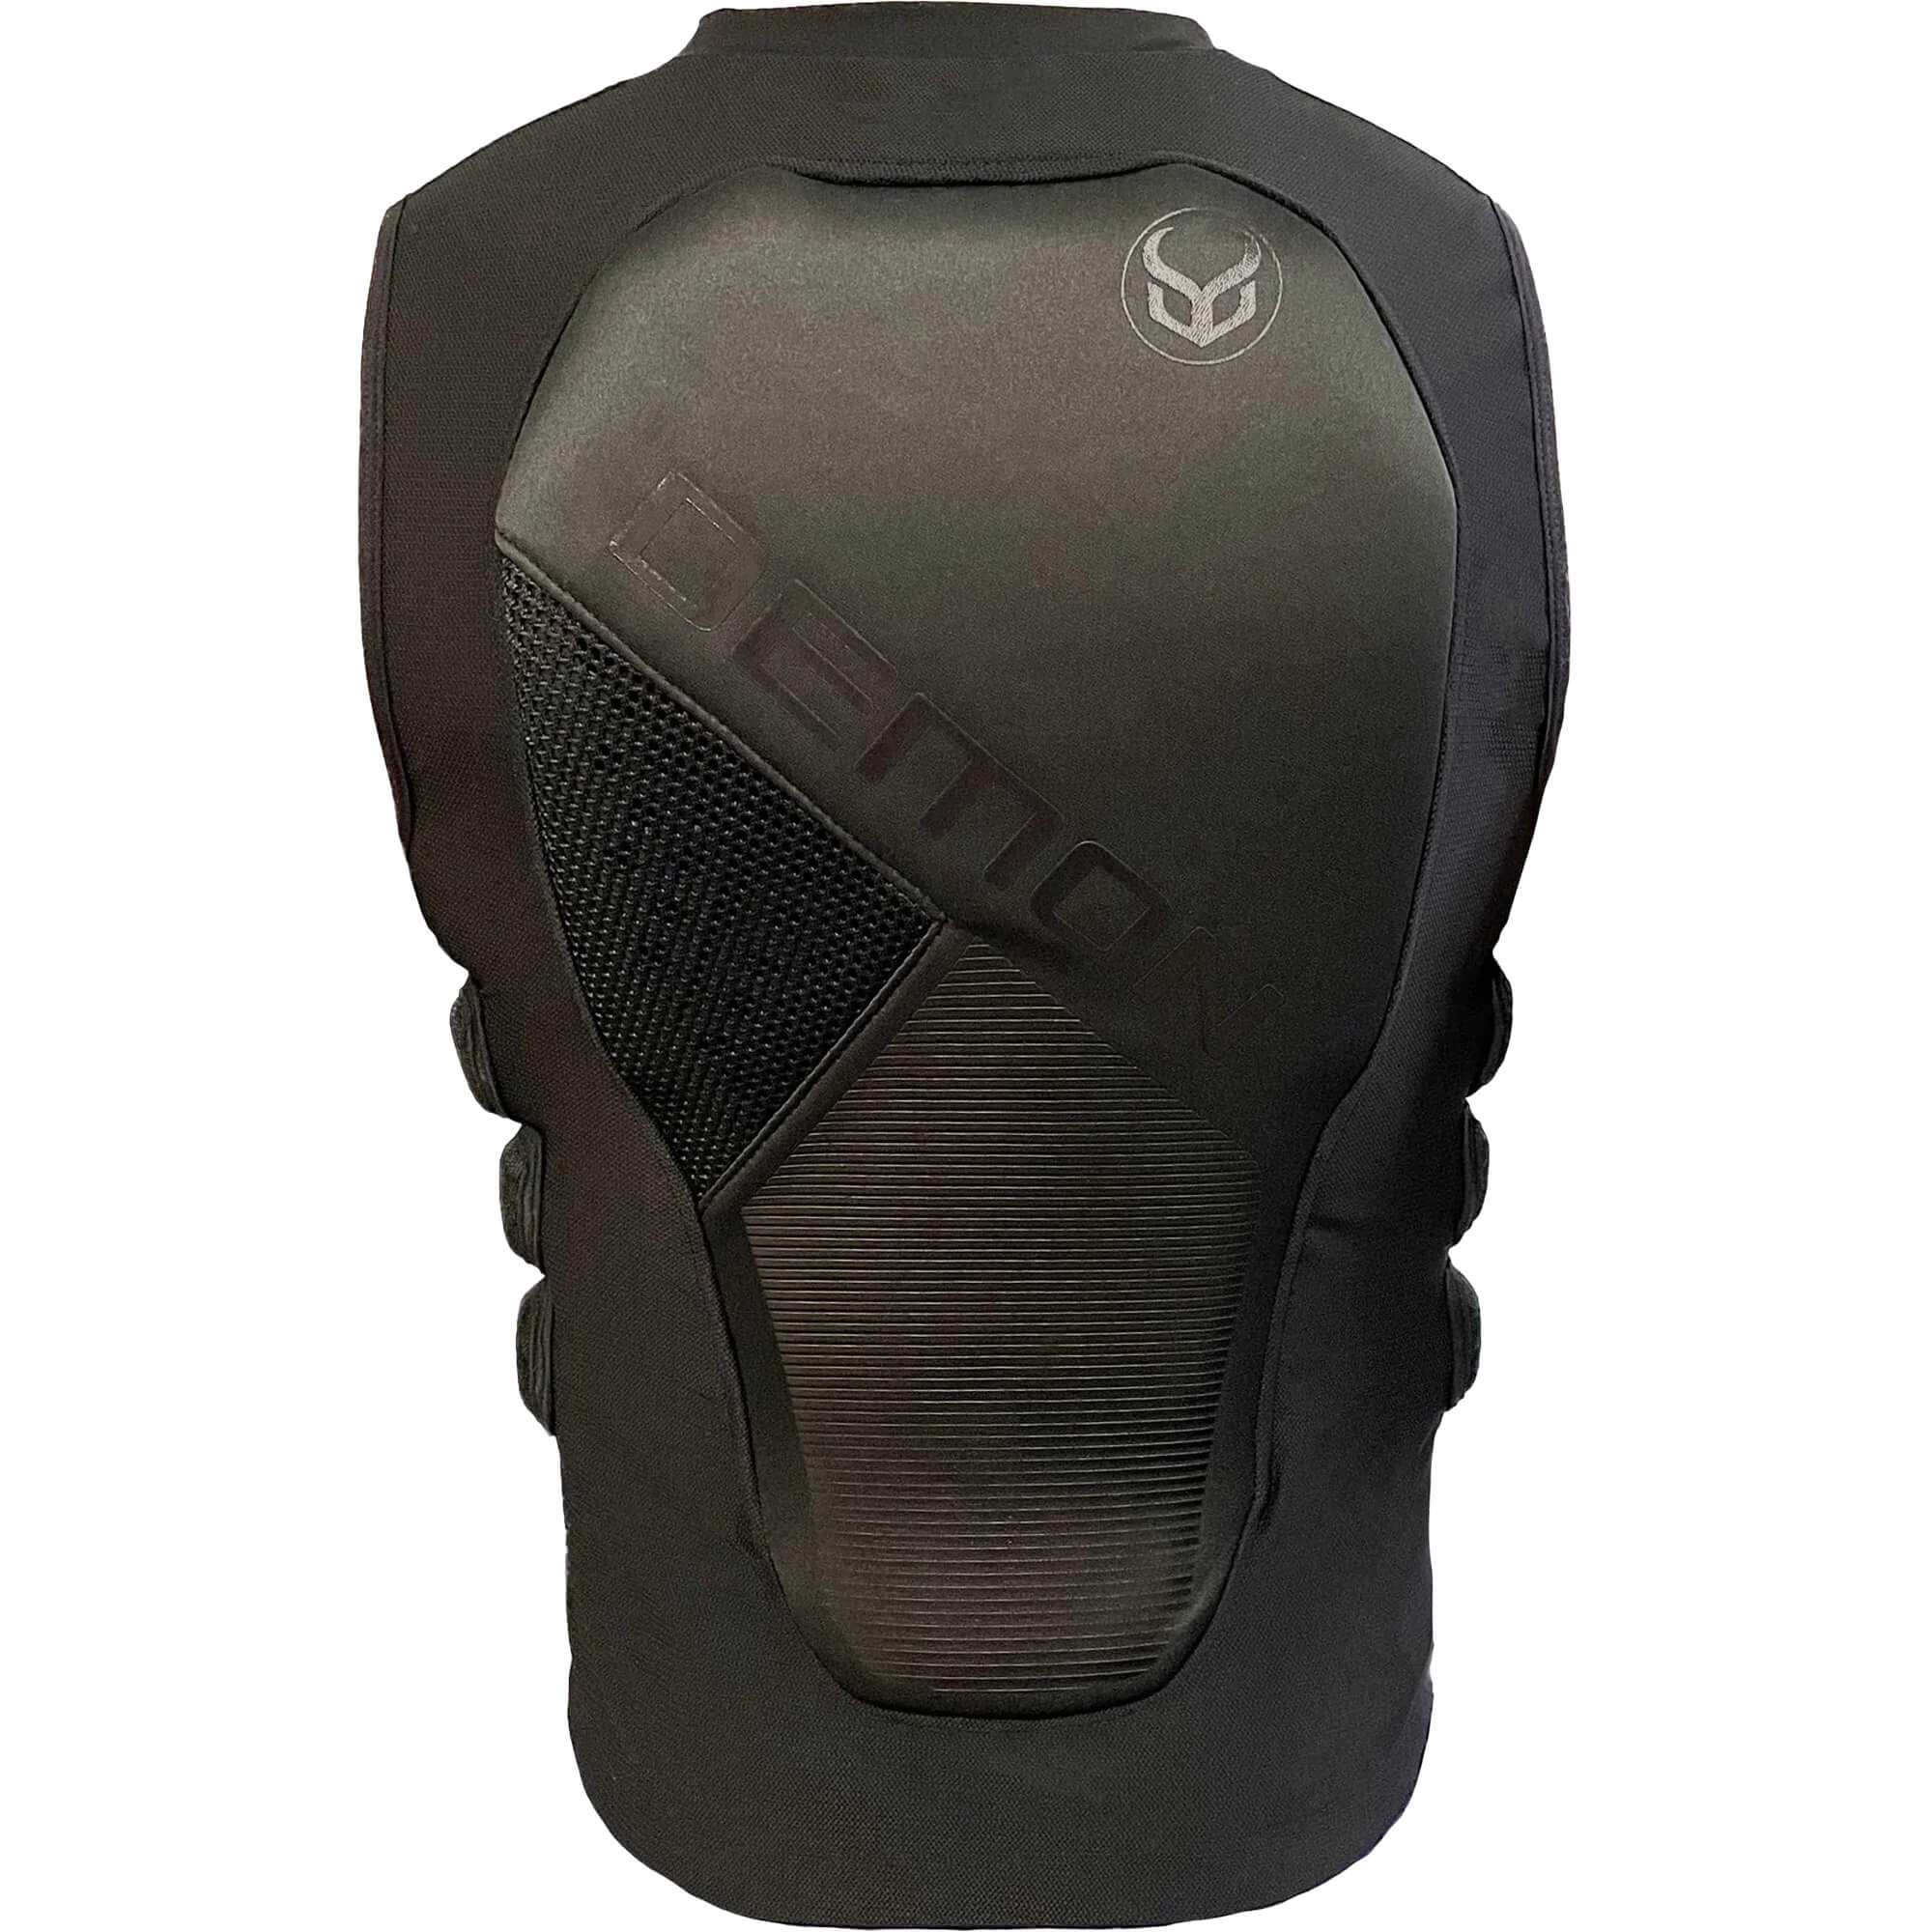 Demon Zero RF D3O Protective Vest